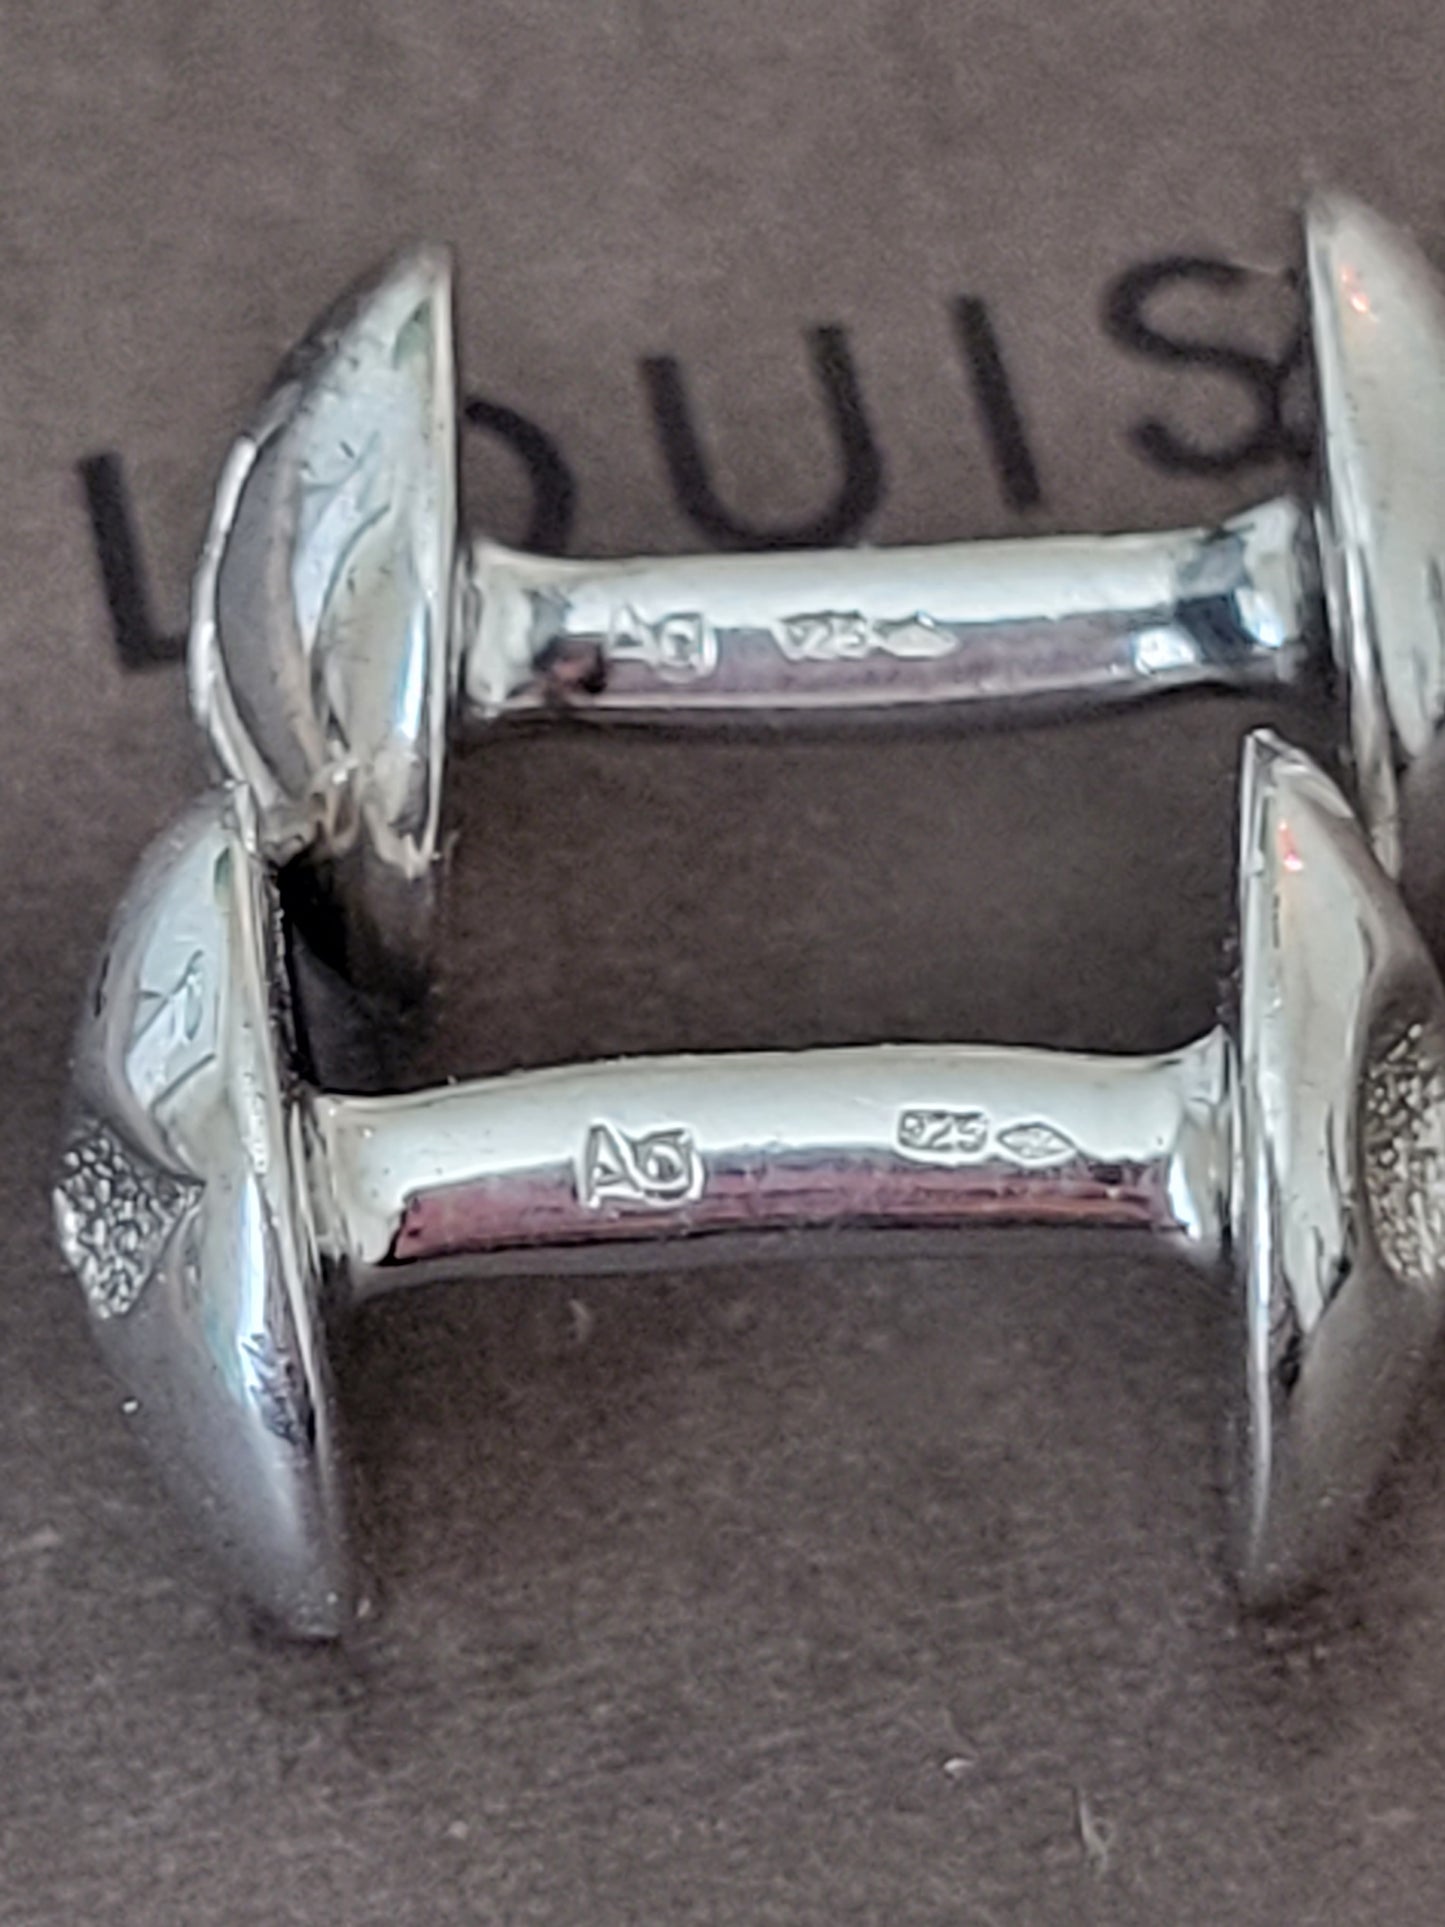 LOUIS VUITTON cuffs M65058 Buton de Manchette Cufflinks Silver925